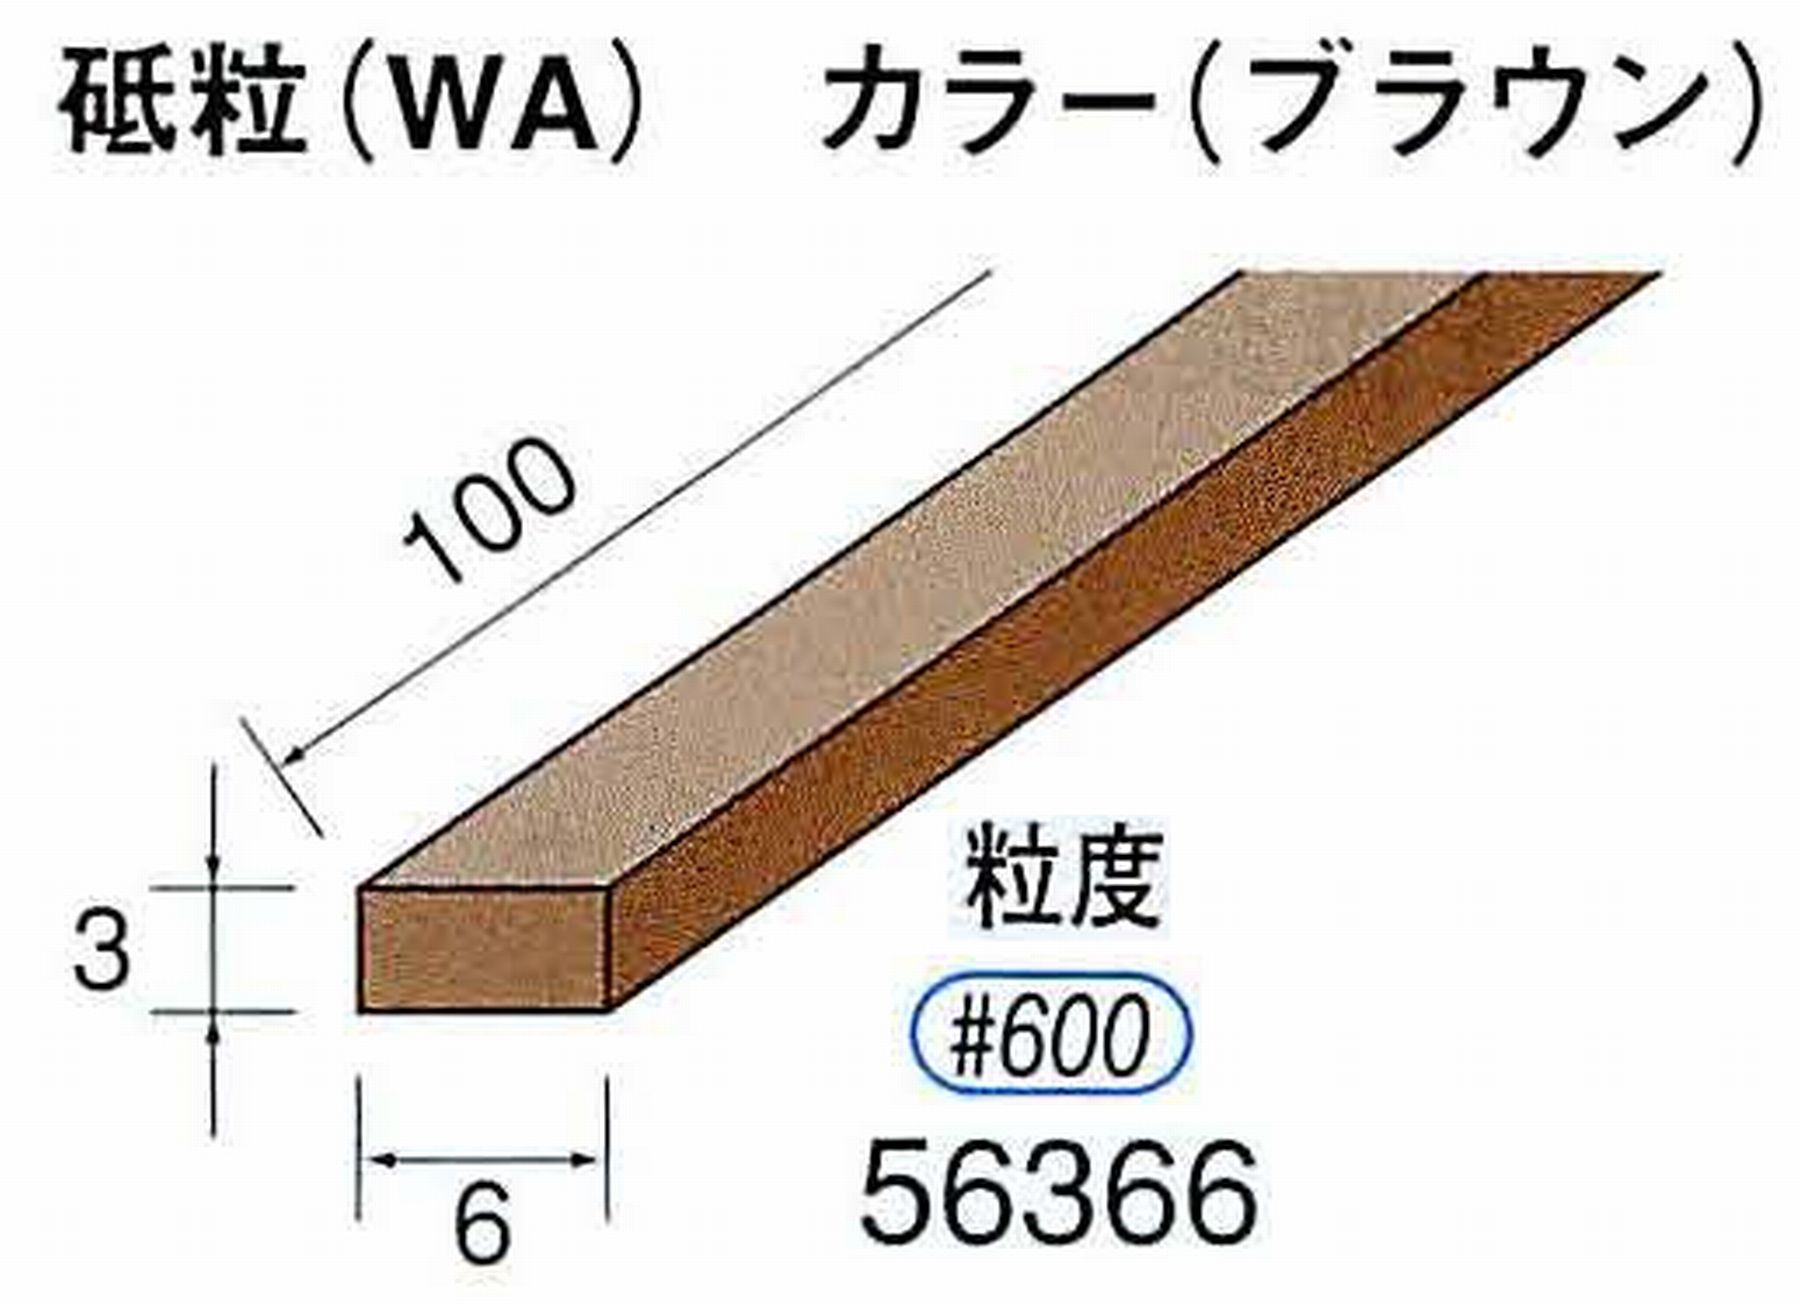 ナカニシ/NAKANISHI スティック砥石 ブラウン・フィニッシュシリーズ 砥粒(WA) 56366